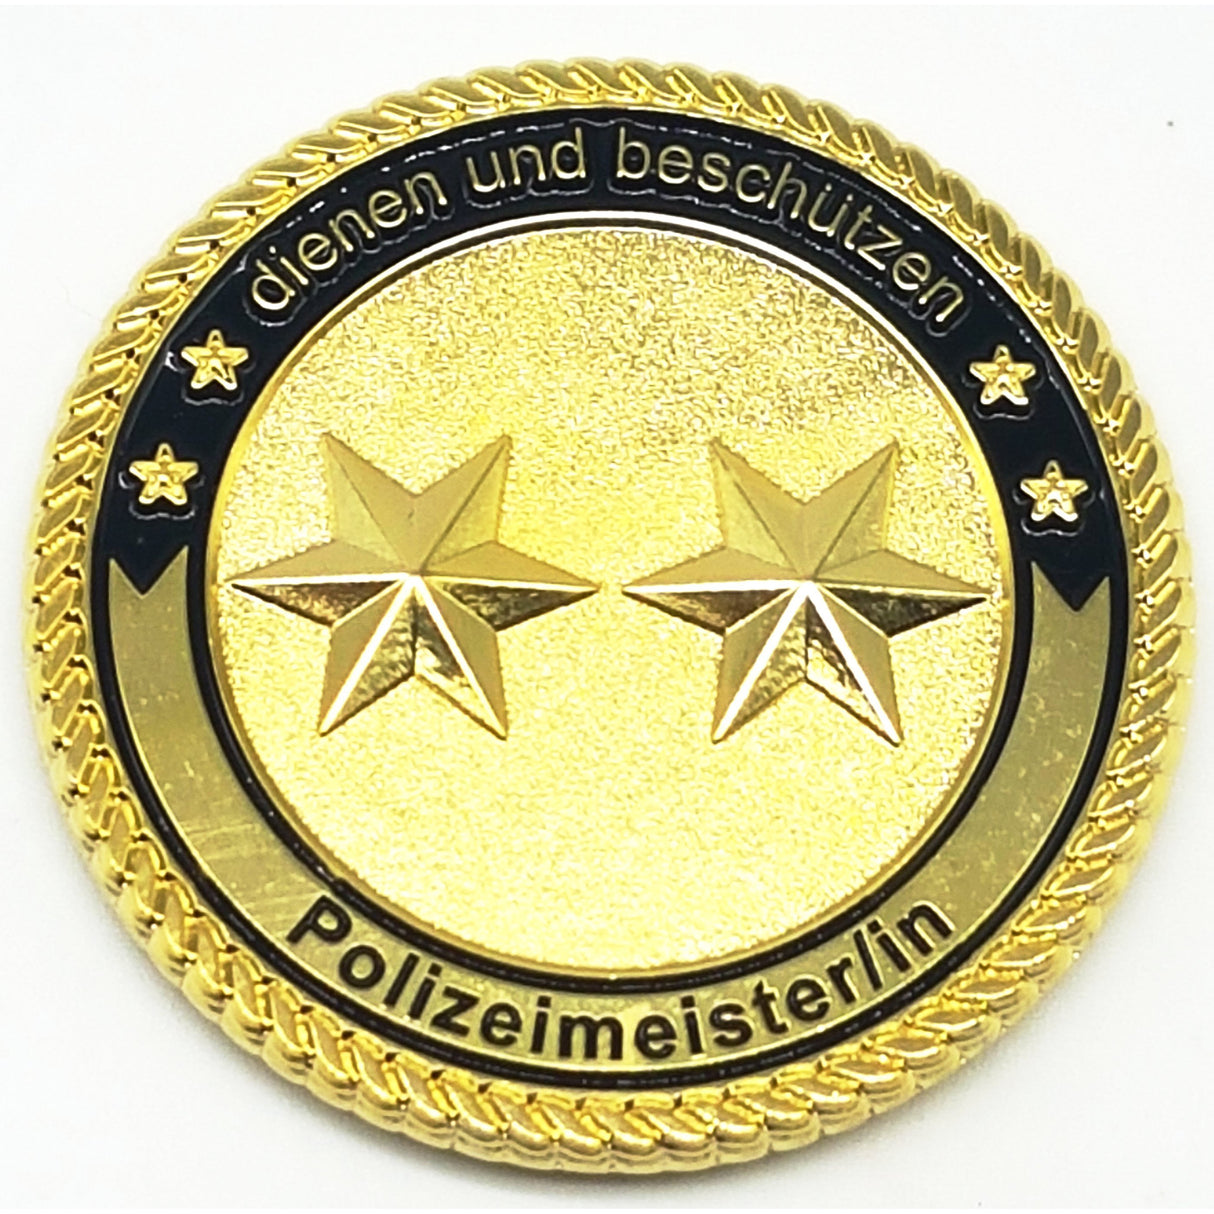 Polizeimeister/in Coin - Polizeimemesshop